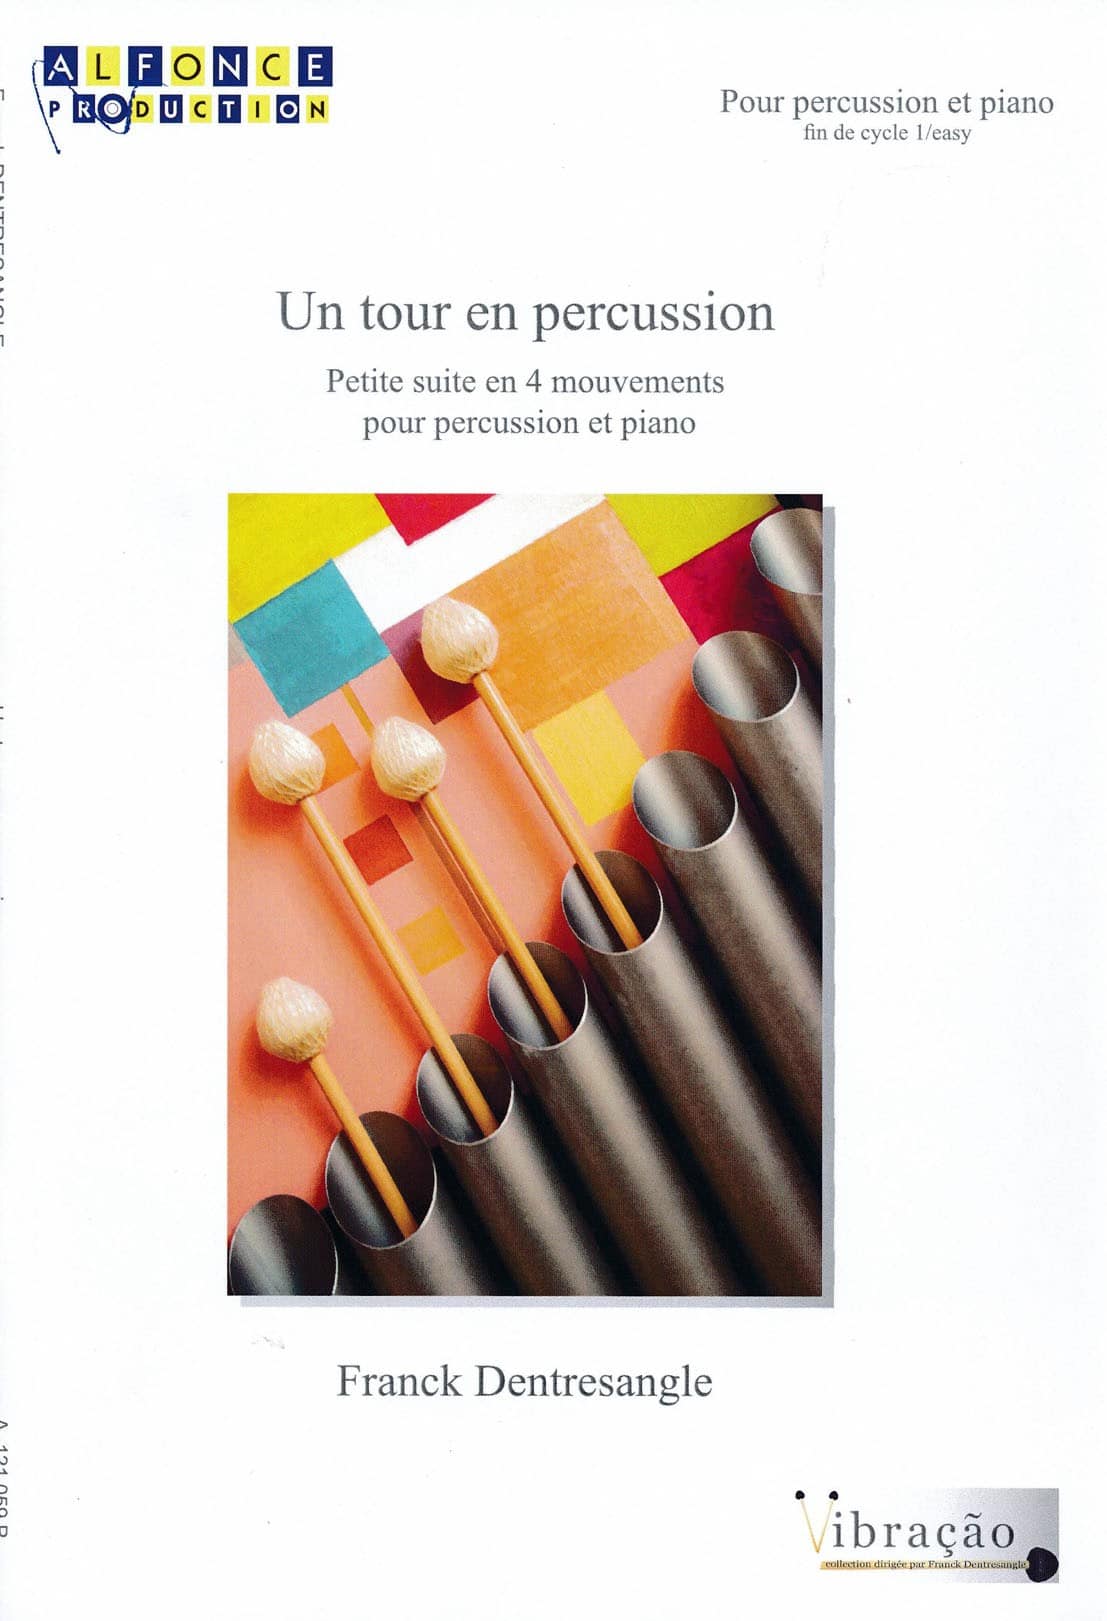 Un tour en percussion by Franck Dentresangle